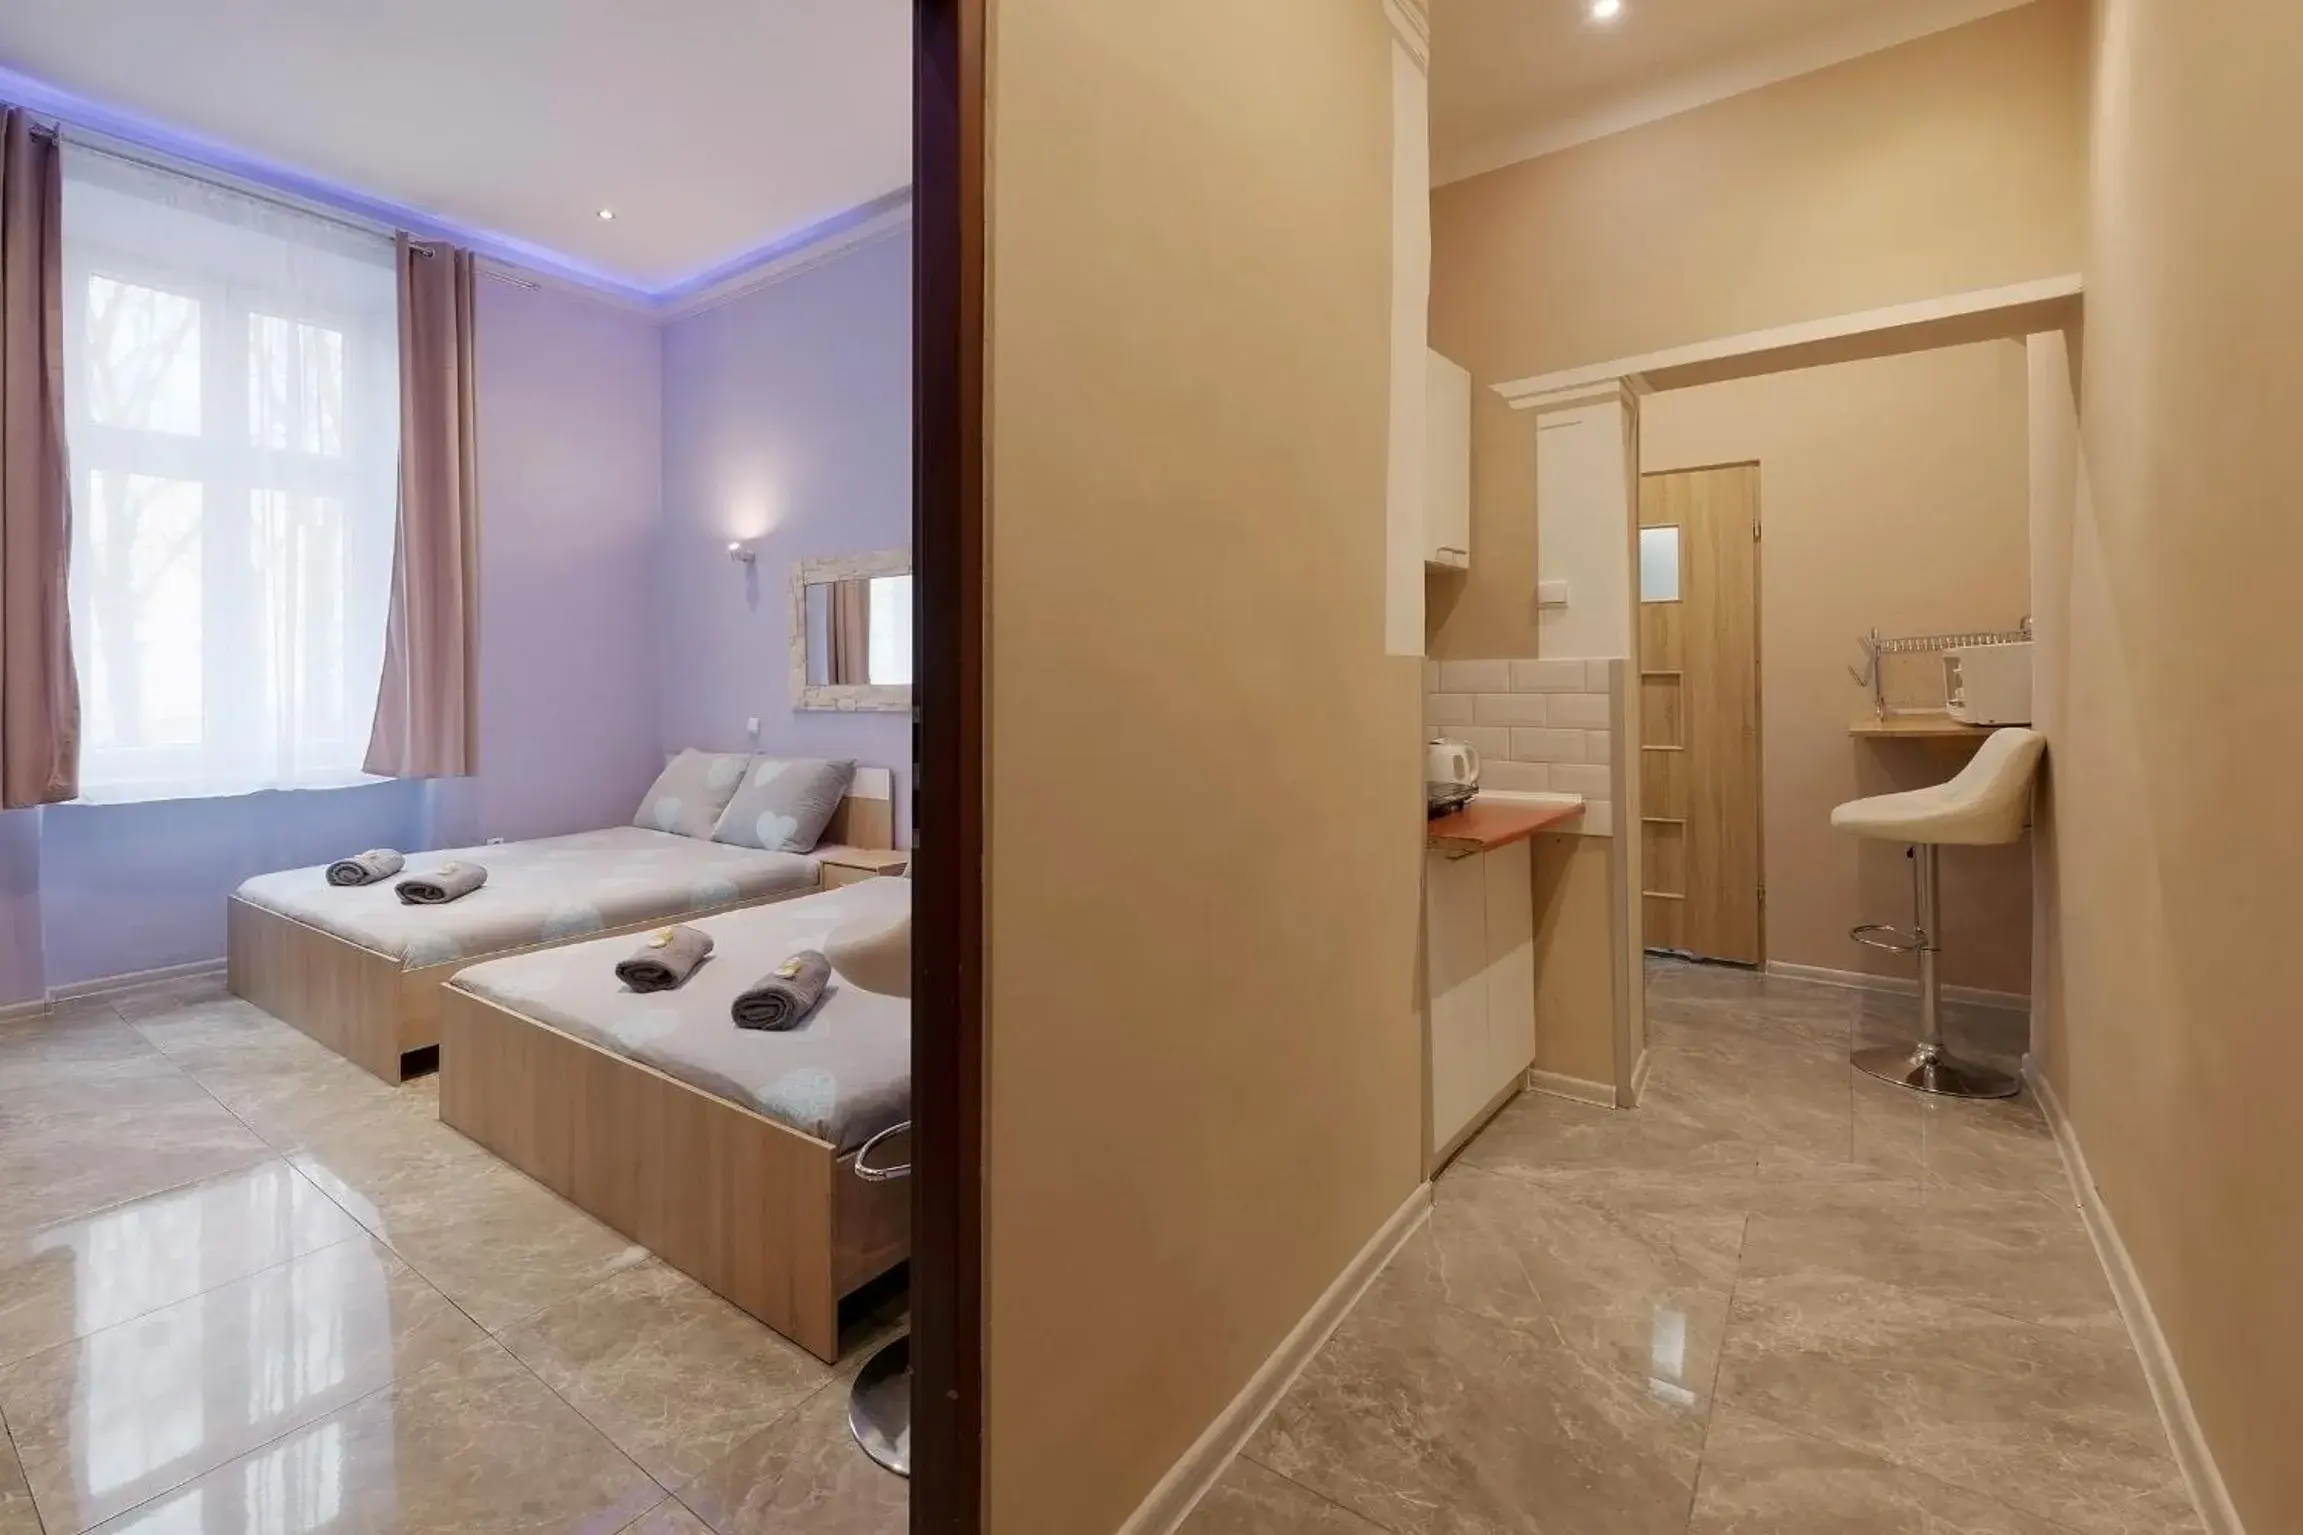 Bed, Bathroom in Queen Apartments